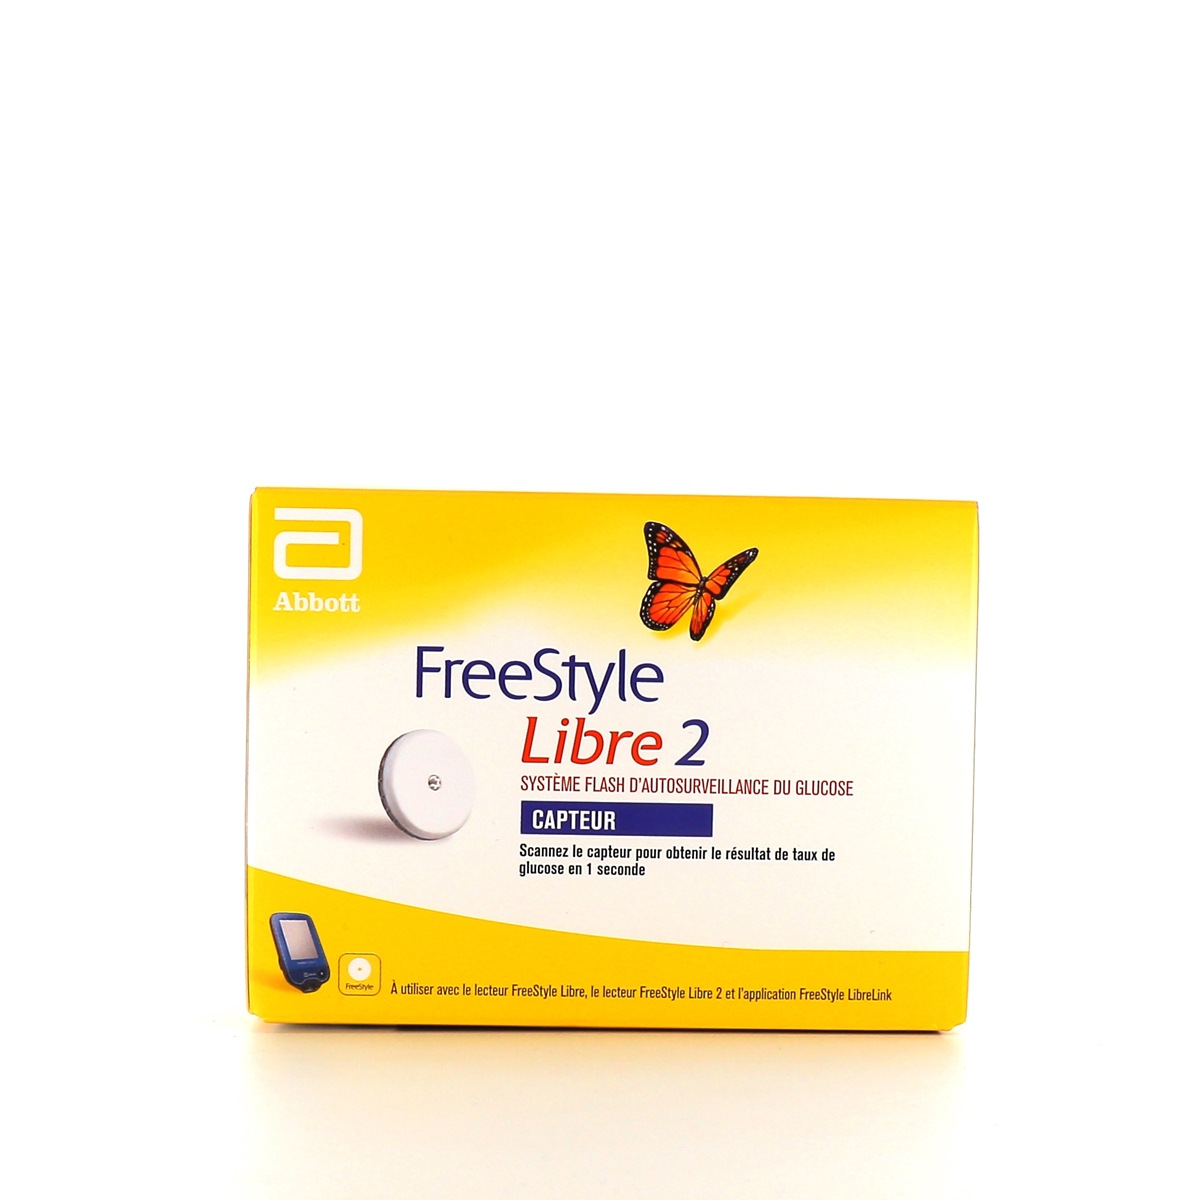 Capteur Freestyle Libre 2 la solution moderne pour gérer votre diabète